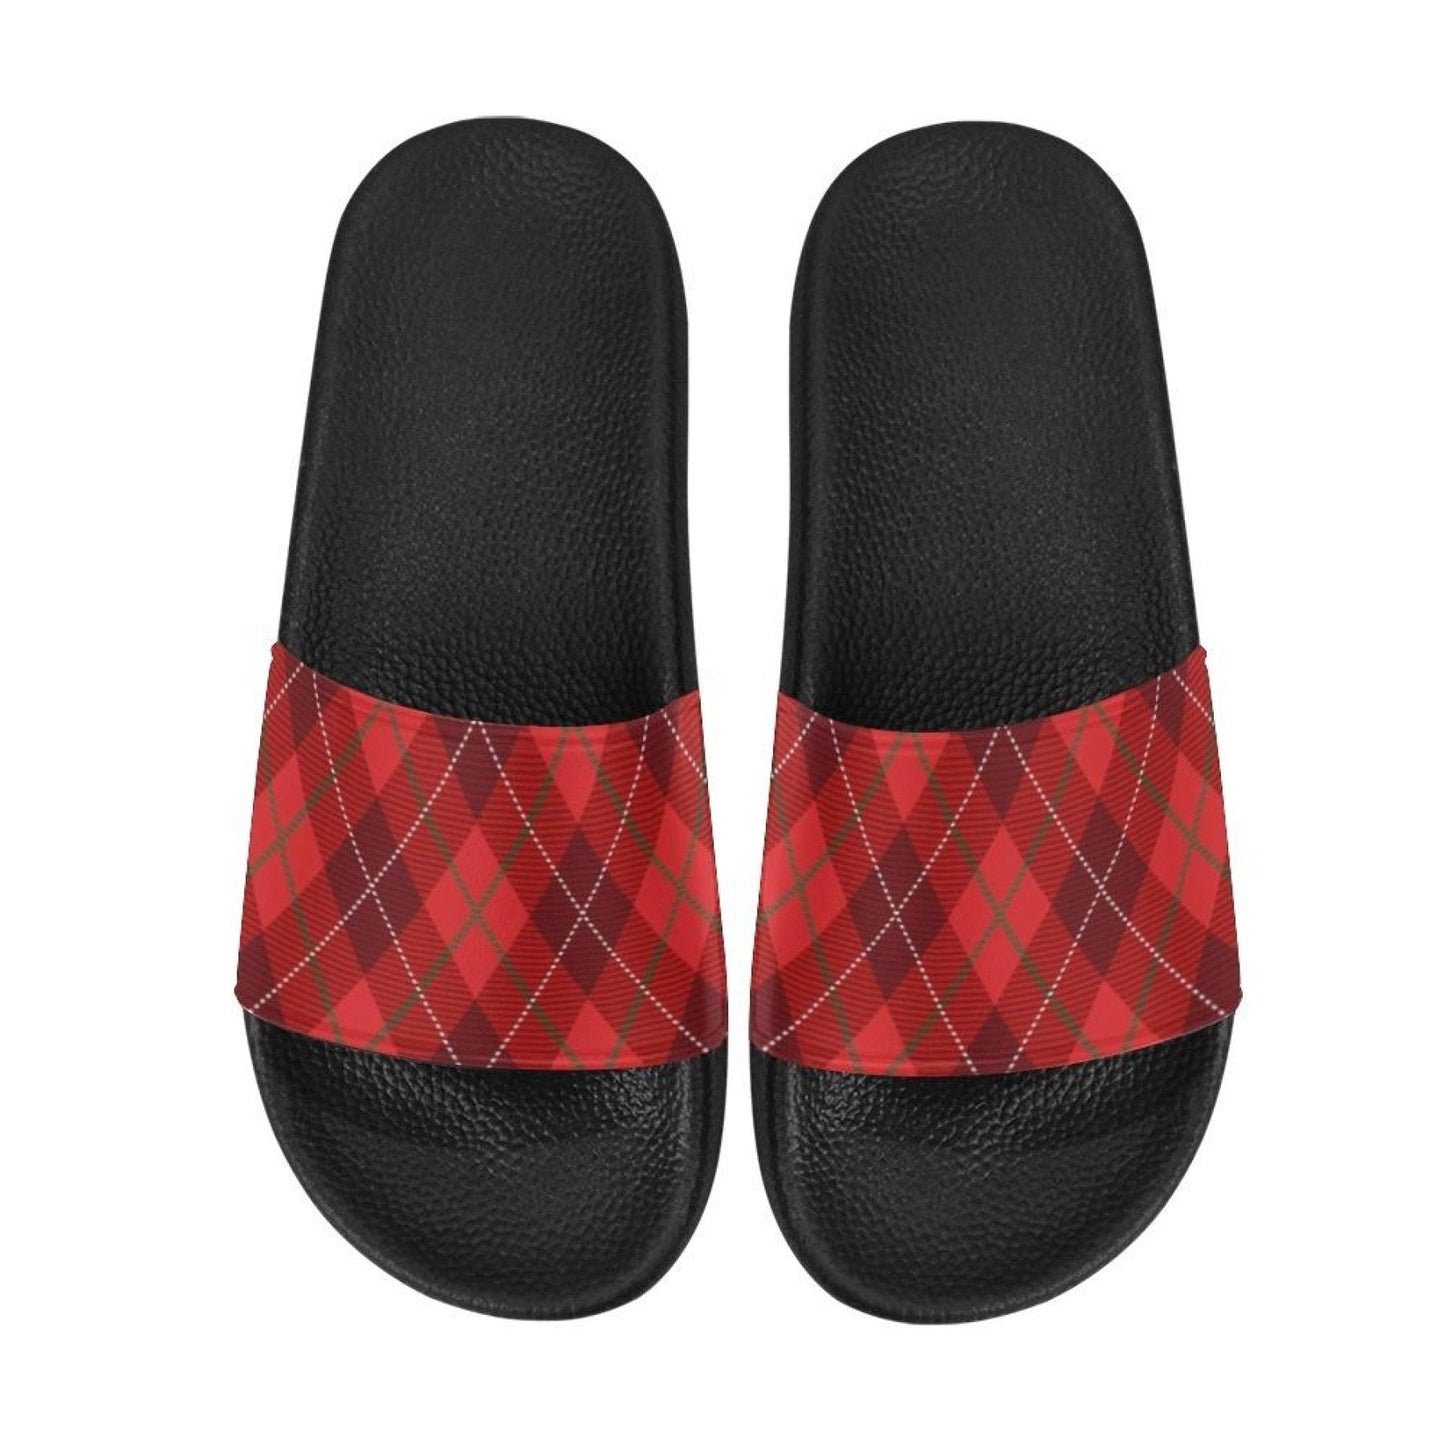 Womens Slides, Flip Flop Sandals, Womens Red Tartan Print-2